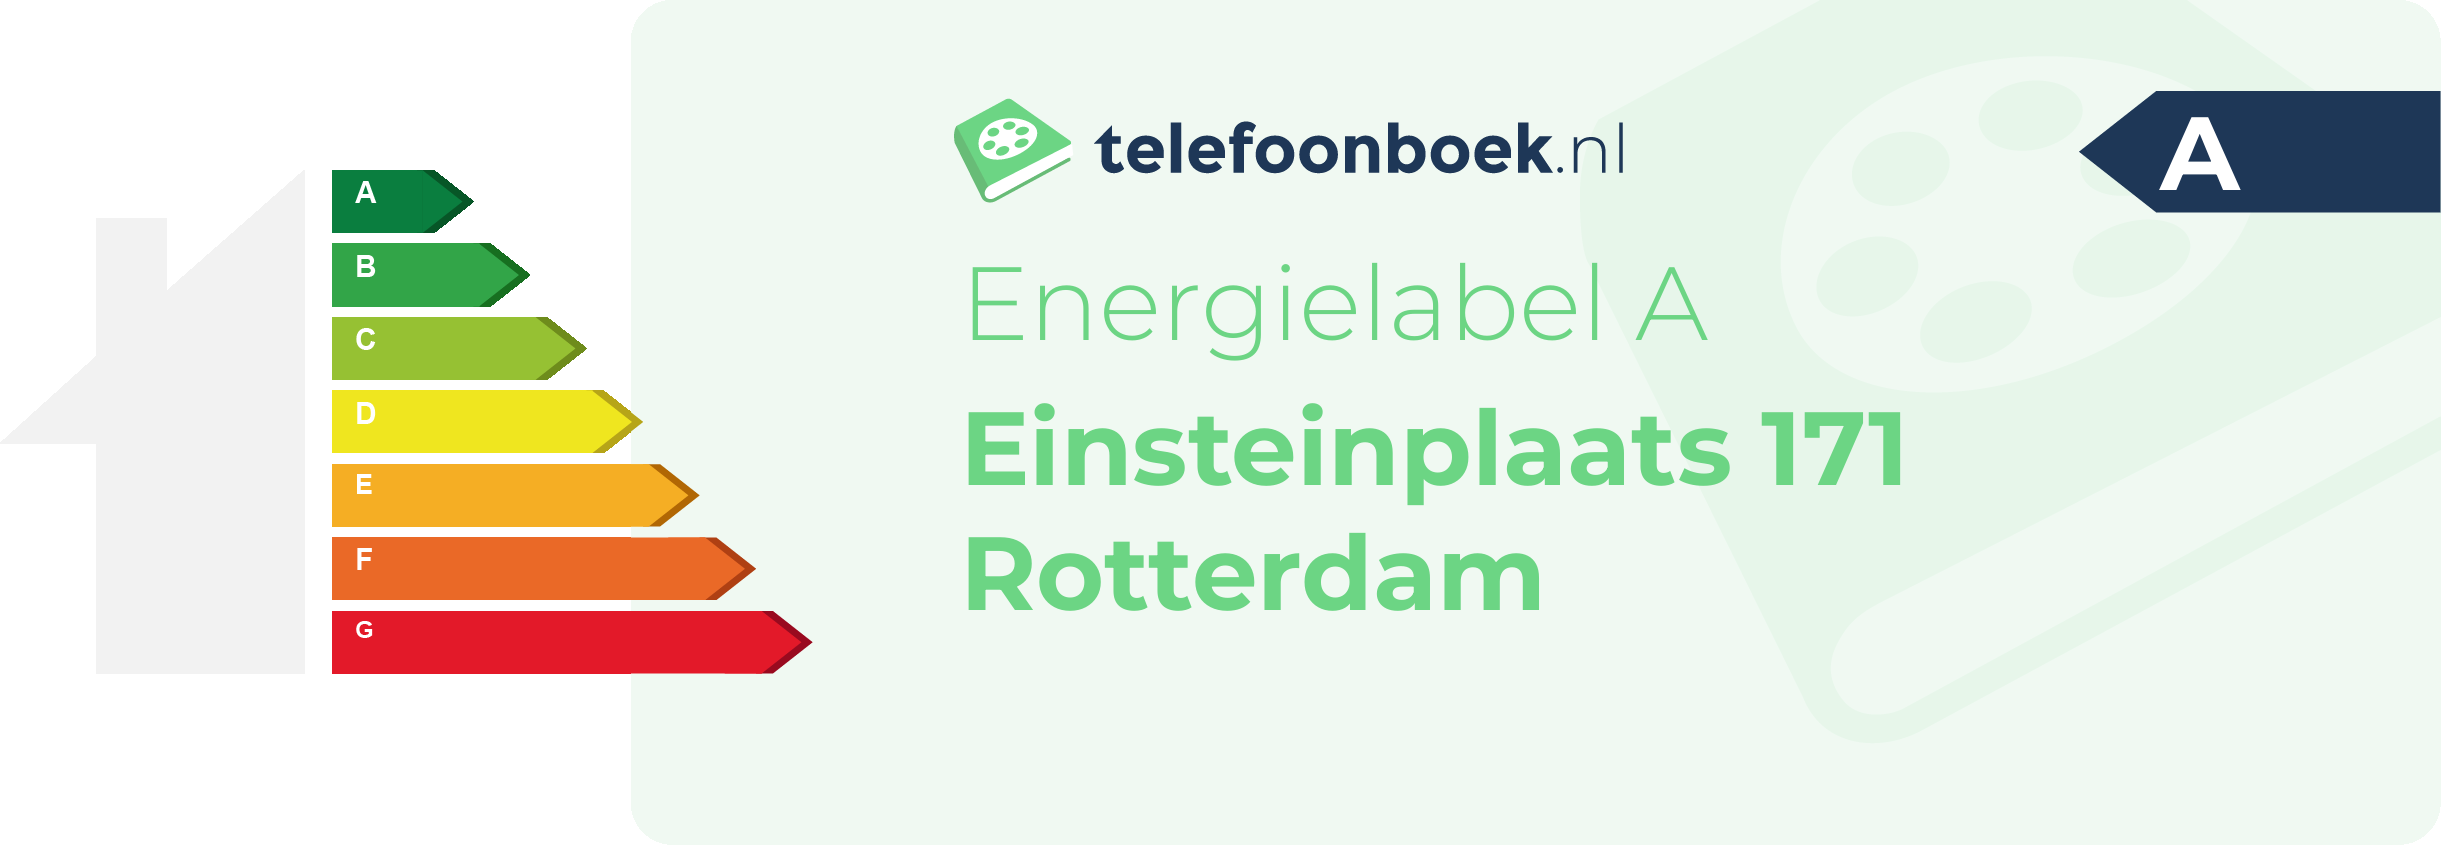 Energielabel Einsteinplaats 171 Rotterdam